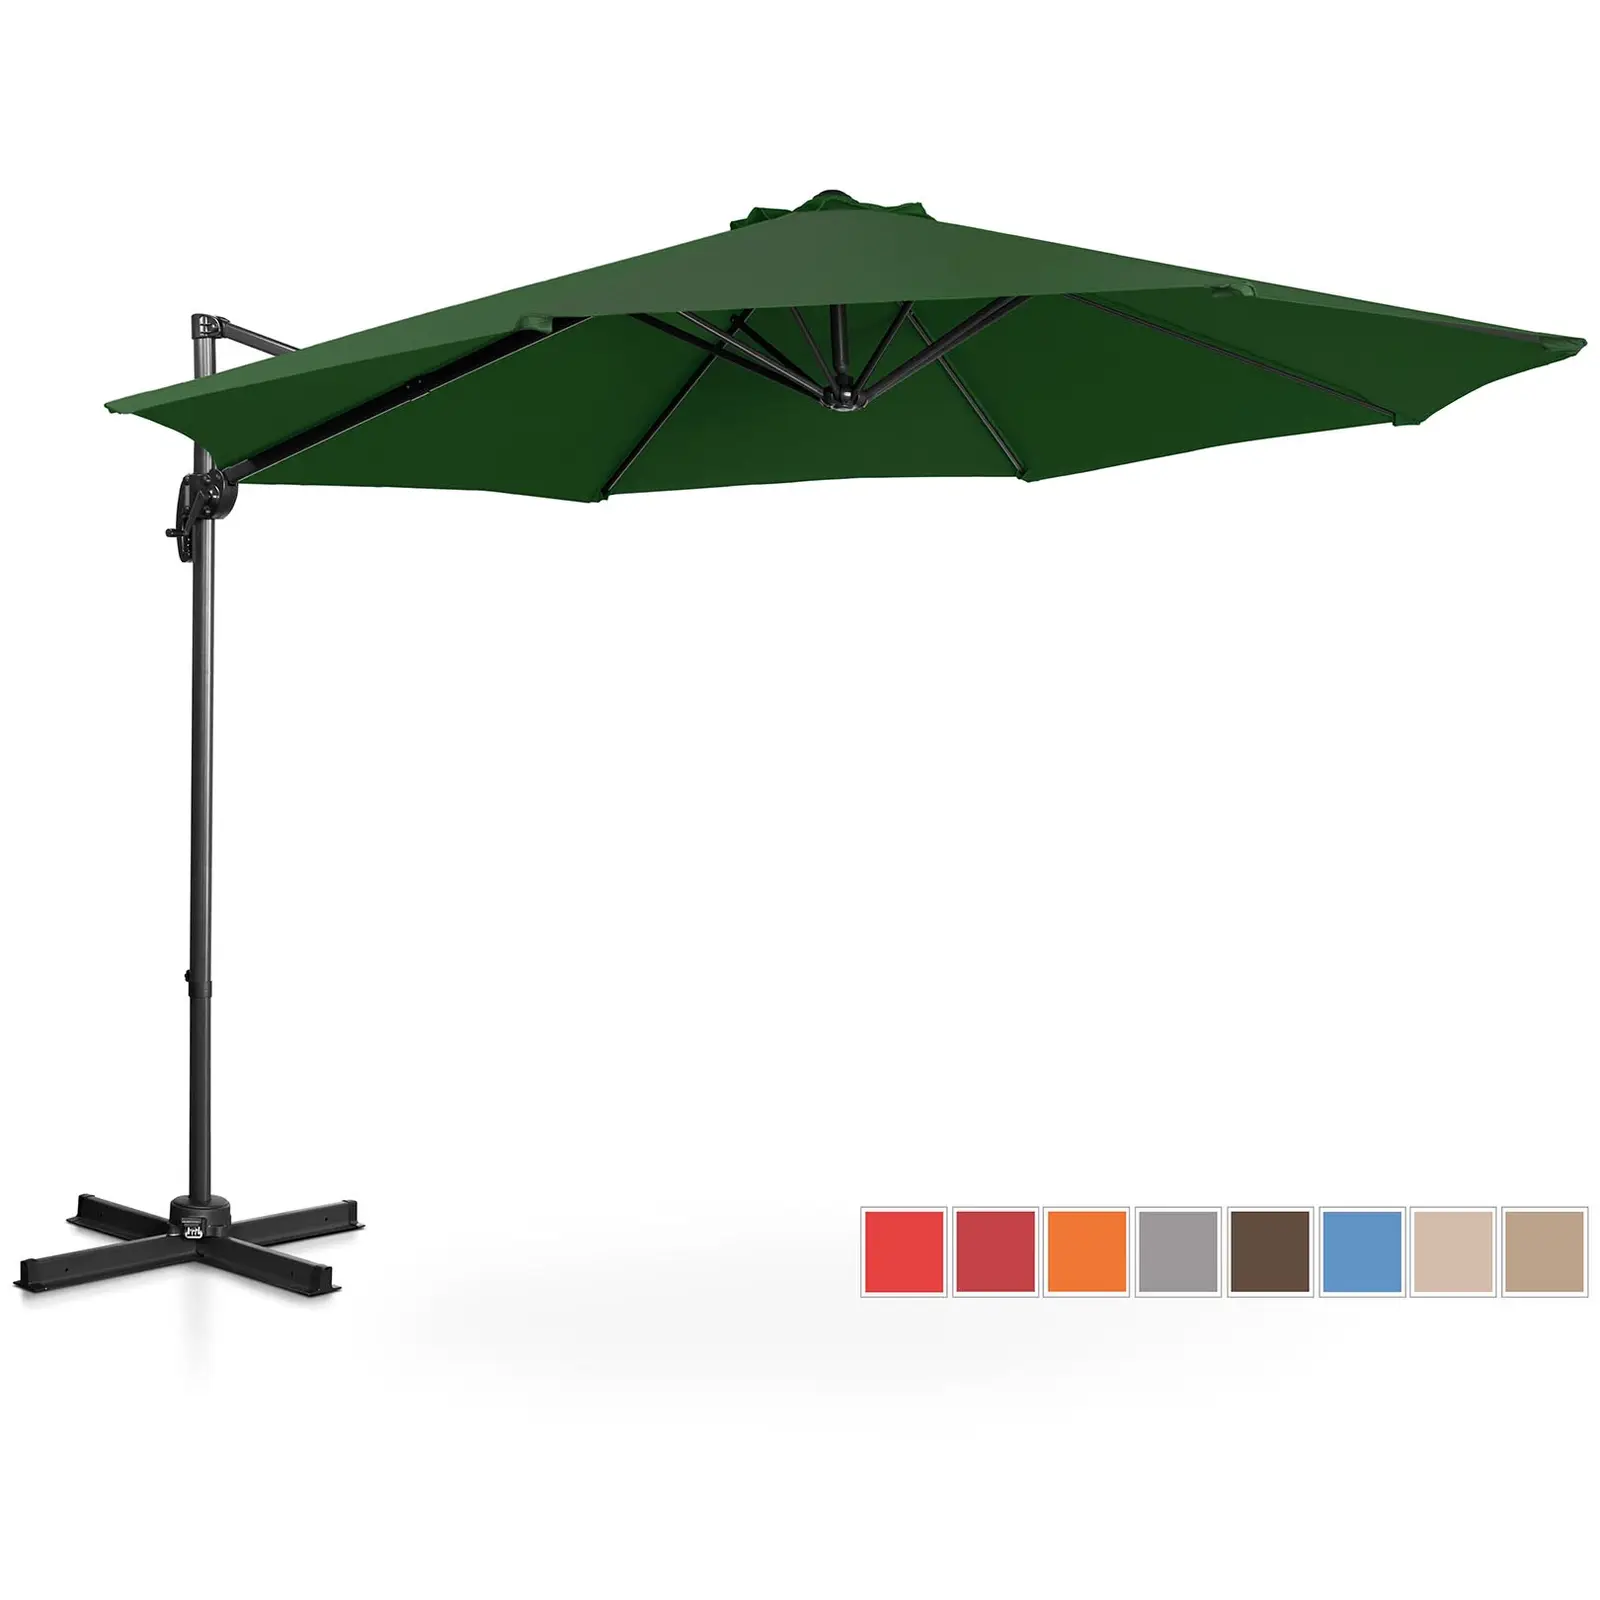 Aurinkovarjo - vihreä - pyöreä - Ø 300 cm - kallistettava ja käännettävä